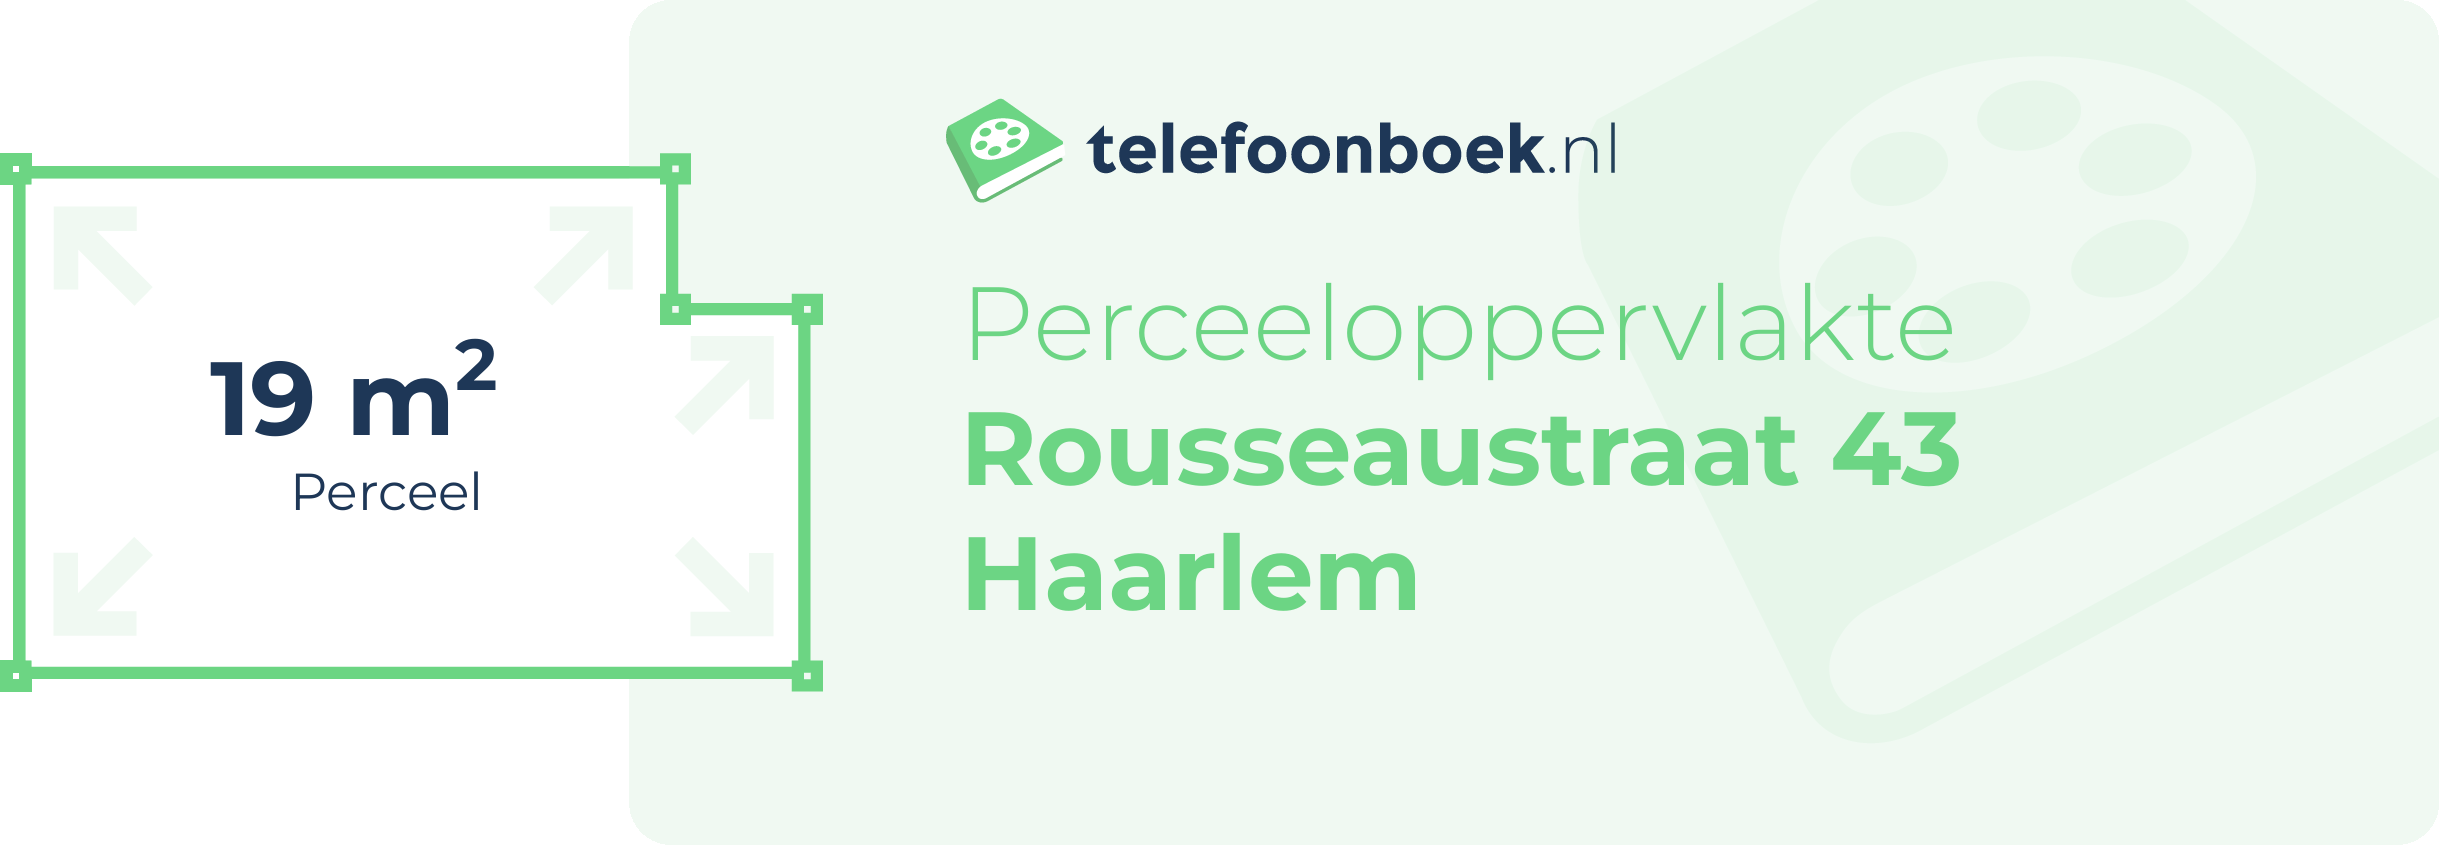 Perceeloppervlakte Rousseaustraat 43 Haarlem